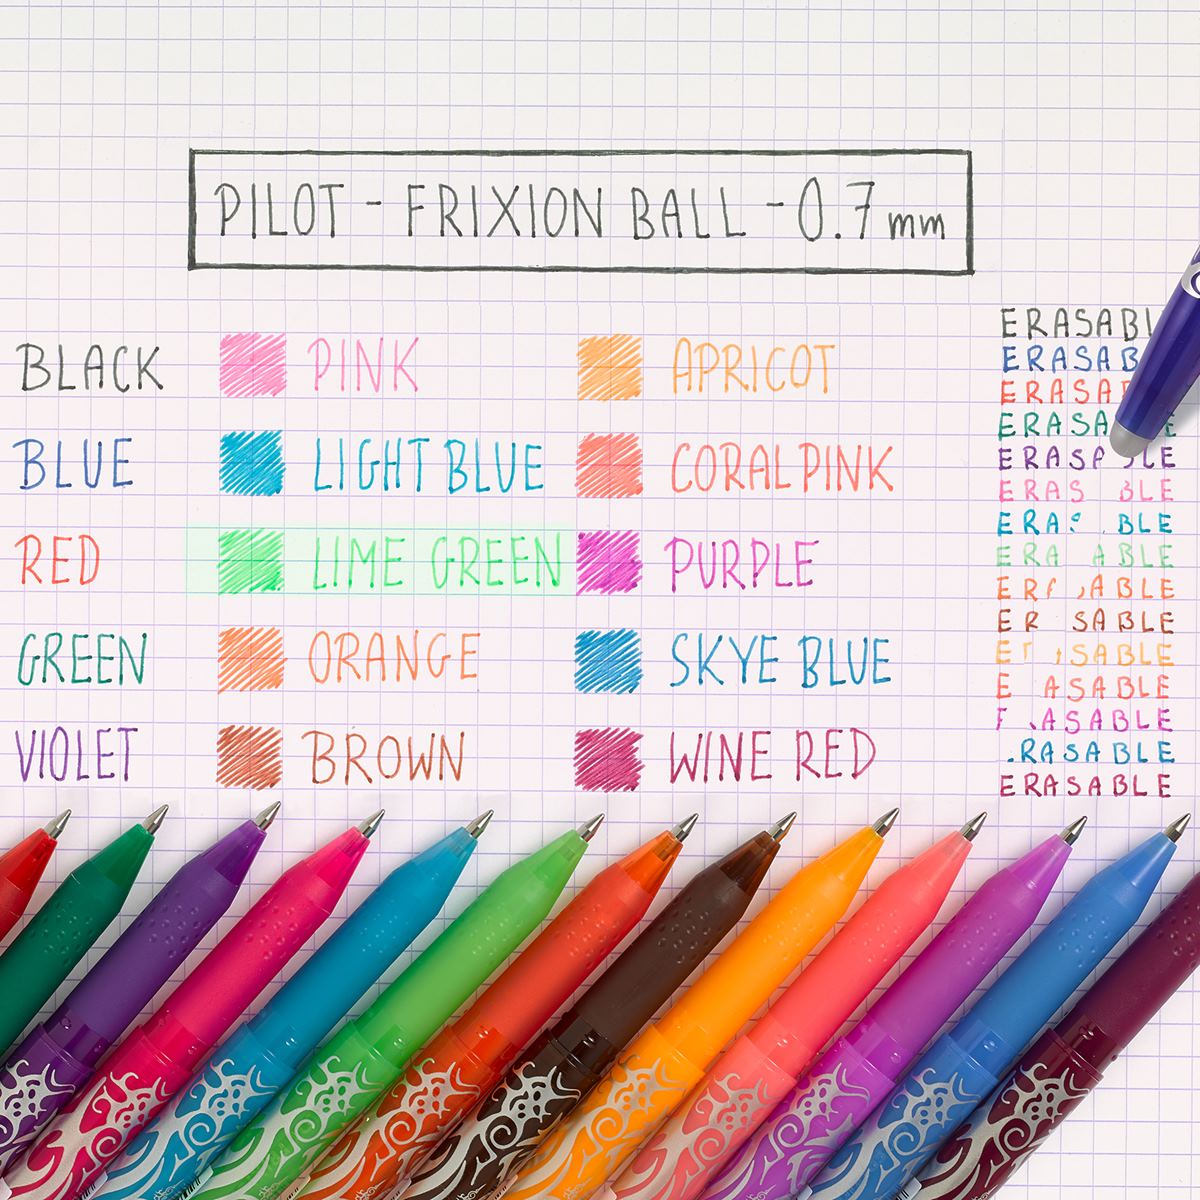 Pilot FriXion Ball Erasable Rollerball Pen - Brown